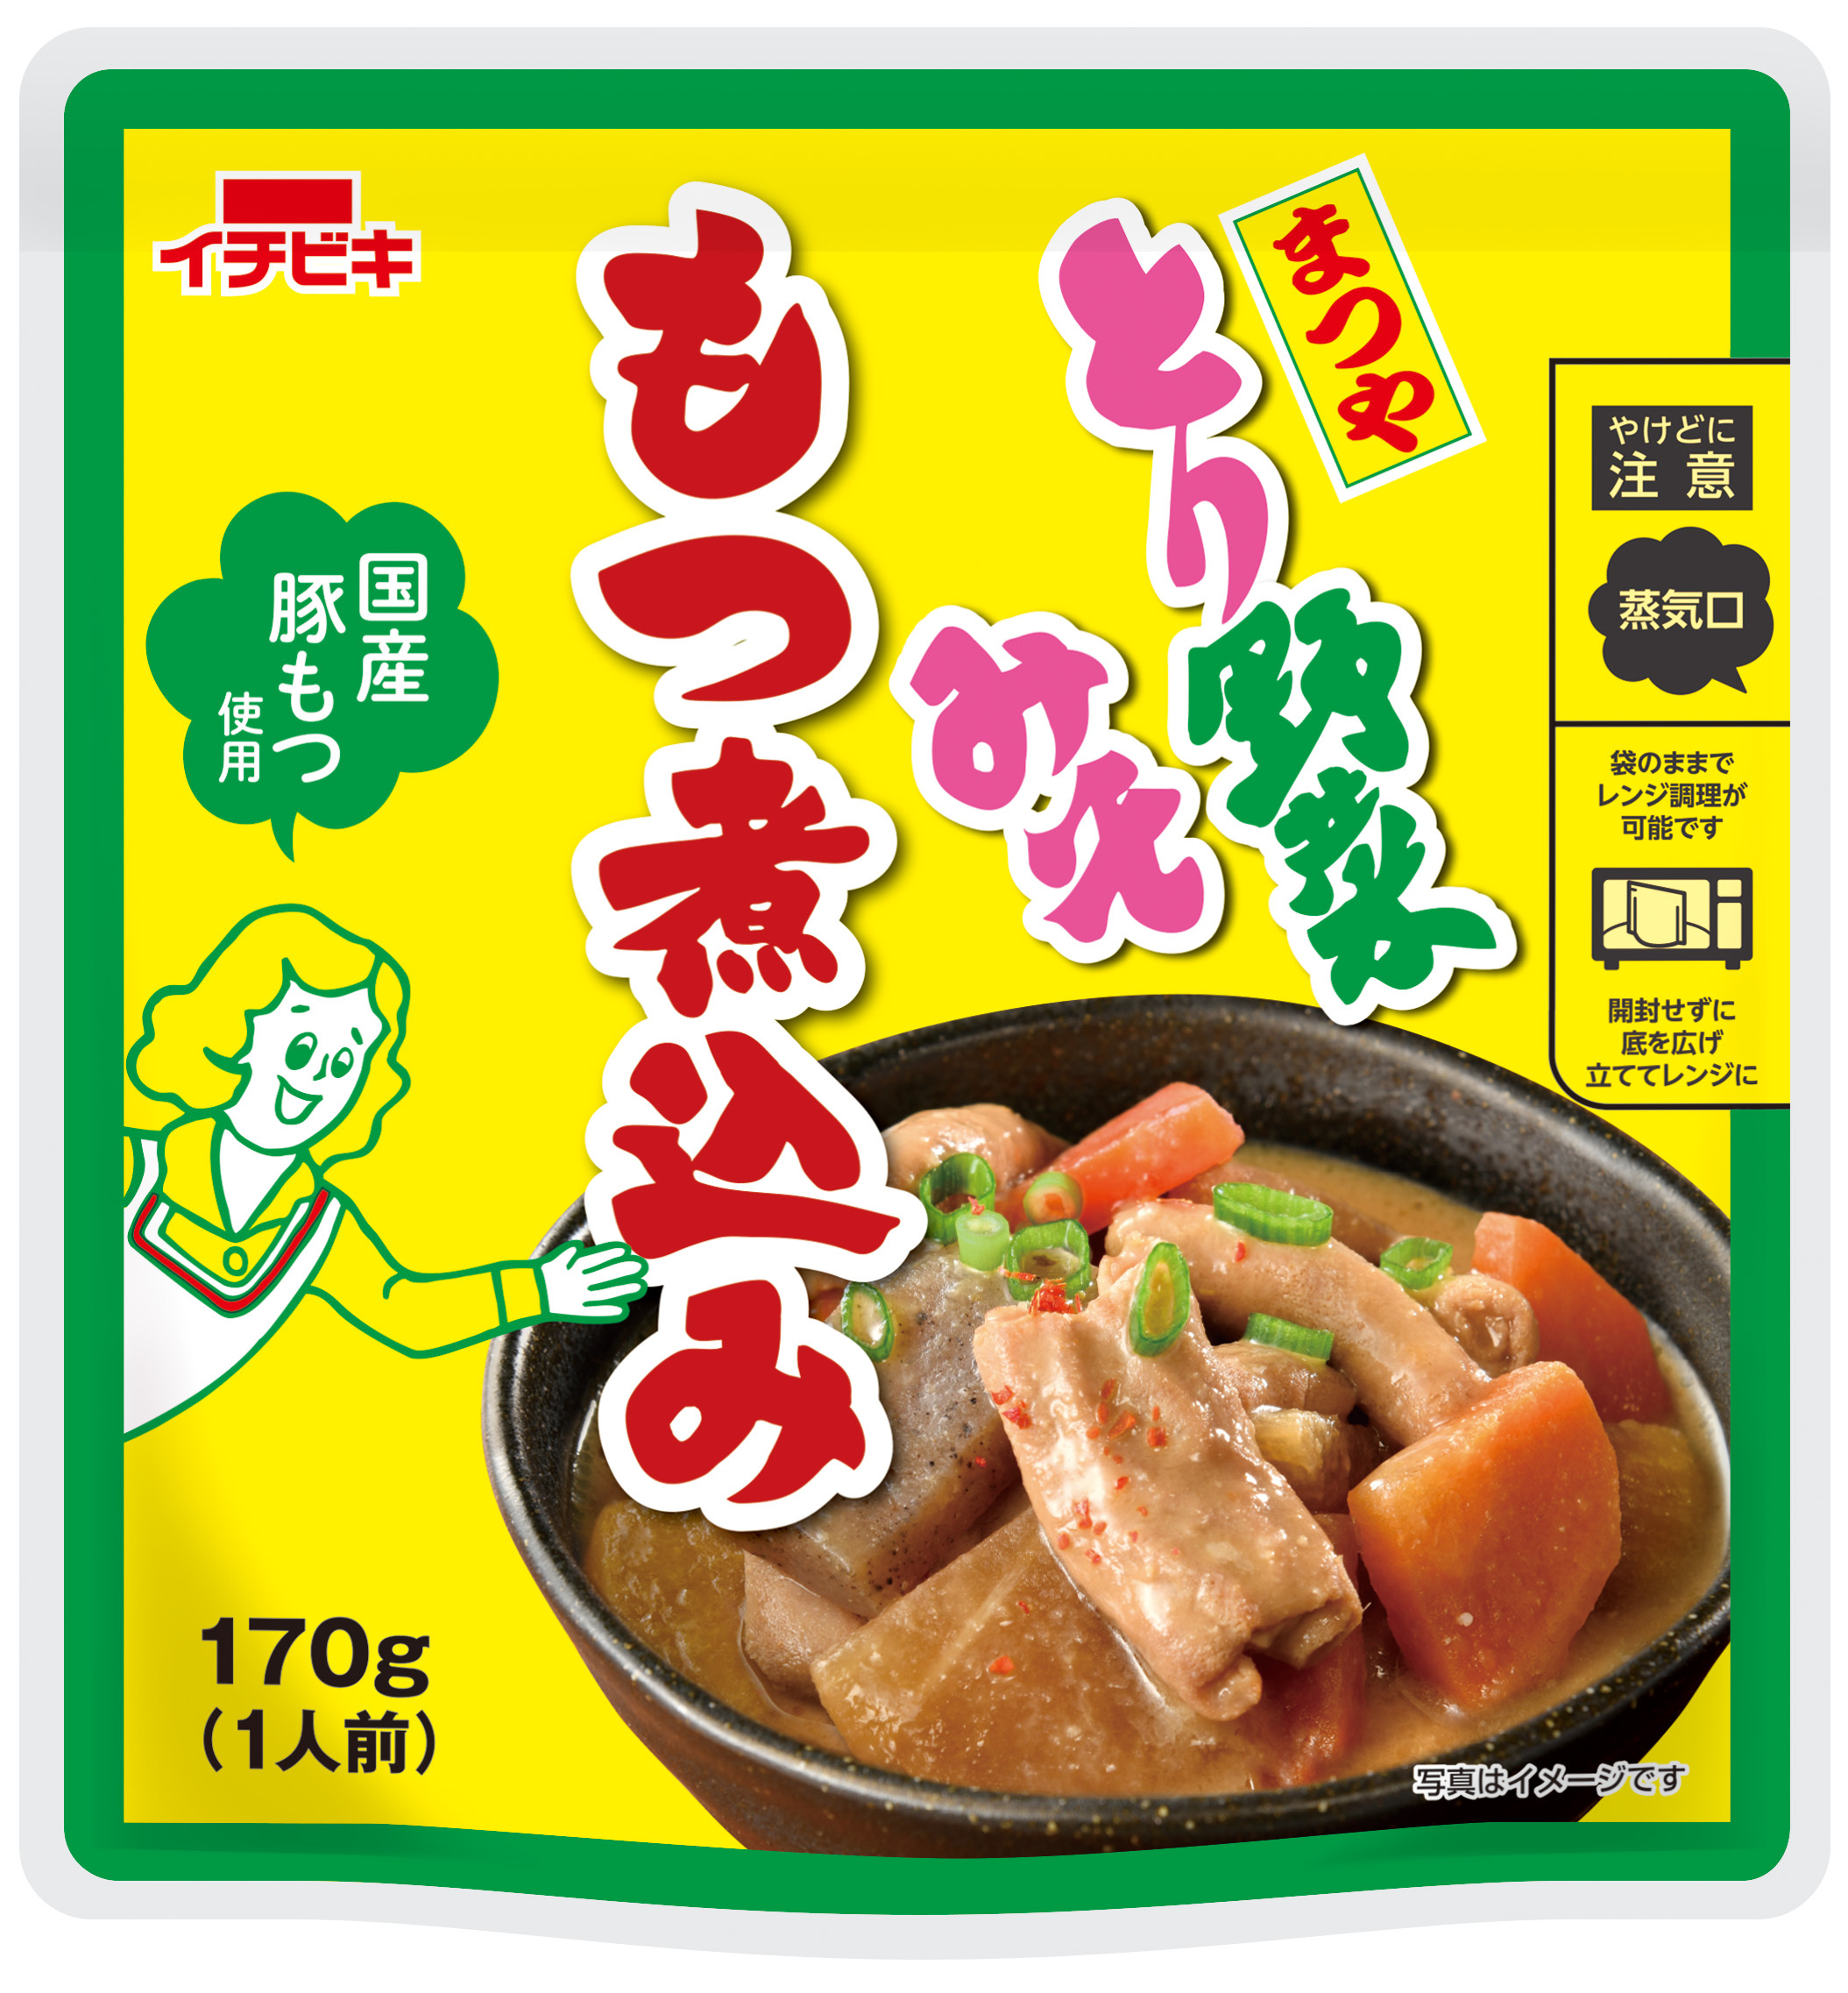 石川県のソウルフード　まつや「とり野菜みそ」を
もつ煮込みで味わえる！
『とり野菜みそもつ煮込み』新発売